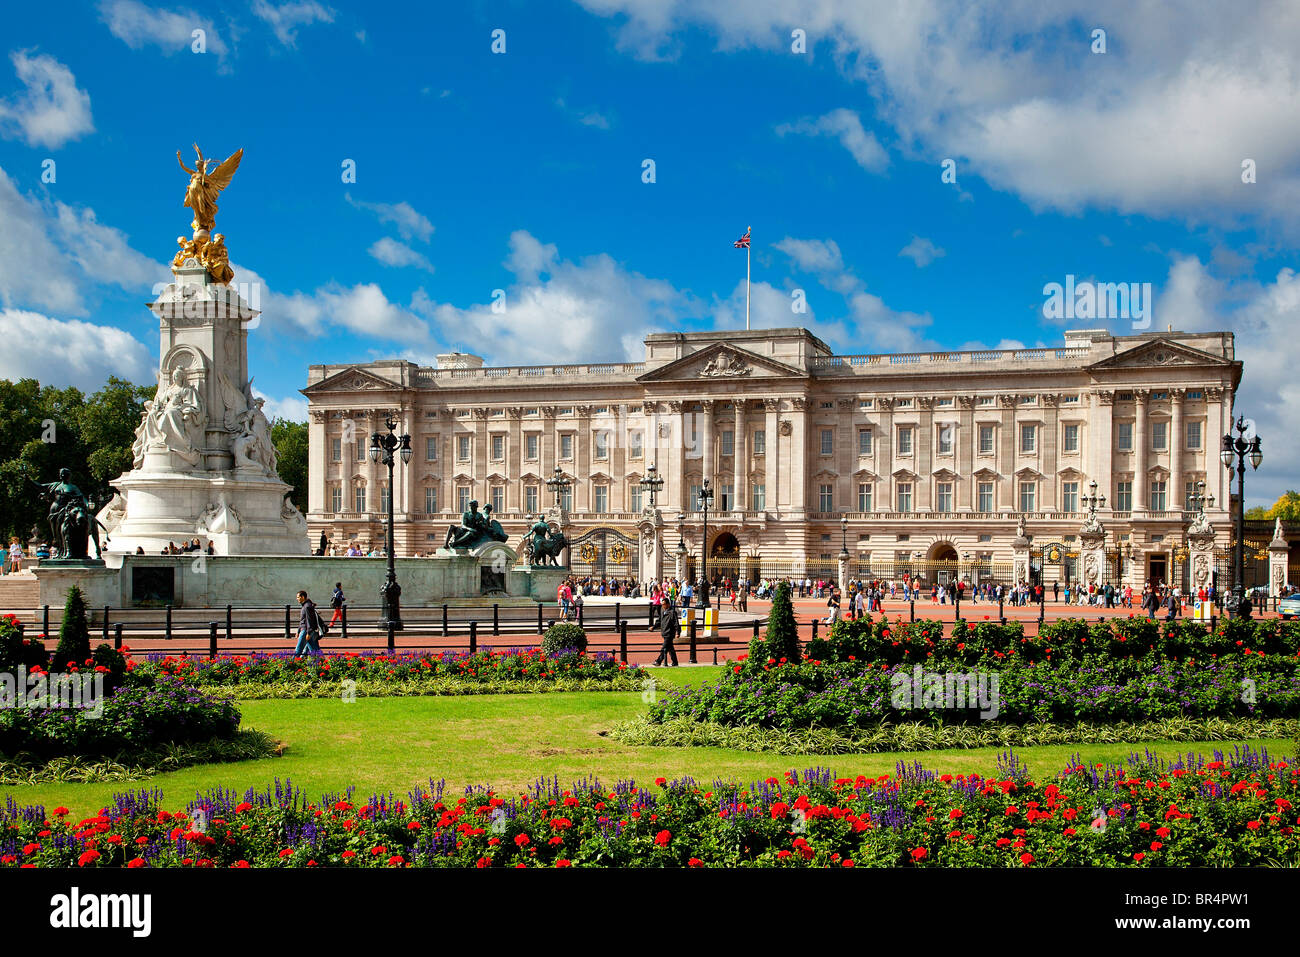 Europe, United Kingdom, England, London, Buckingham Palace Stock Photo